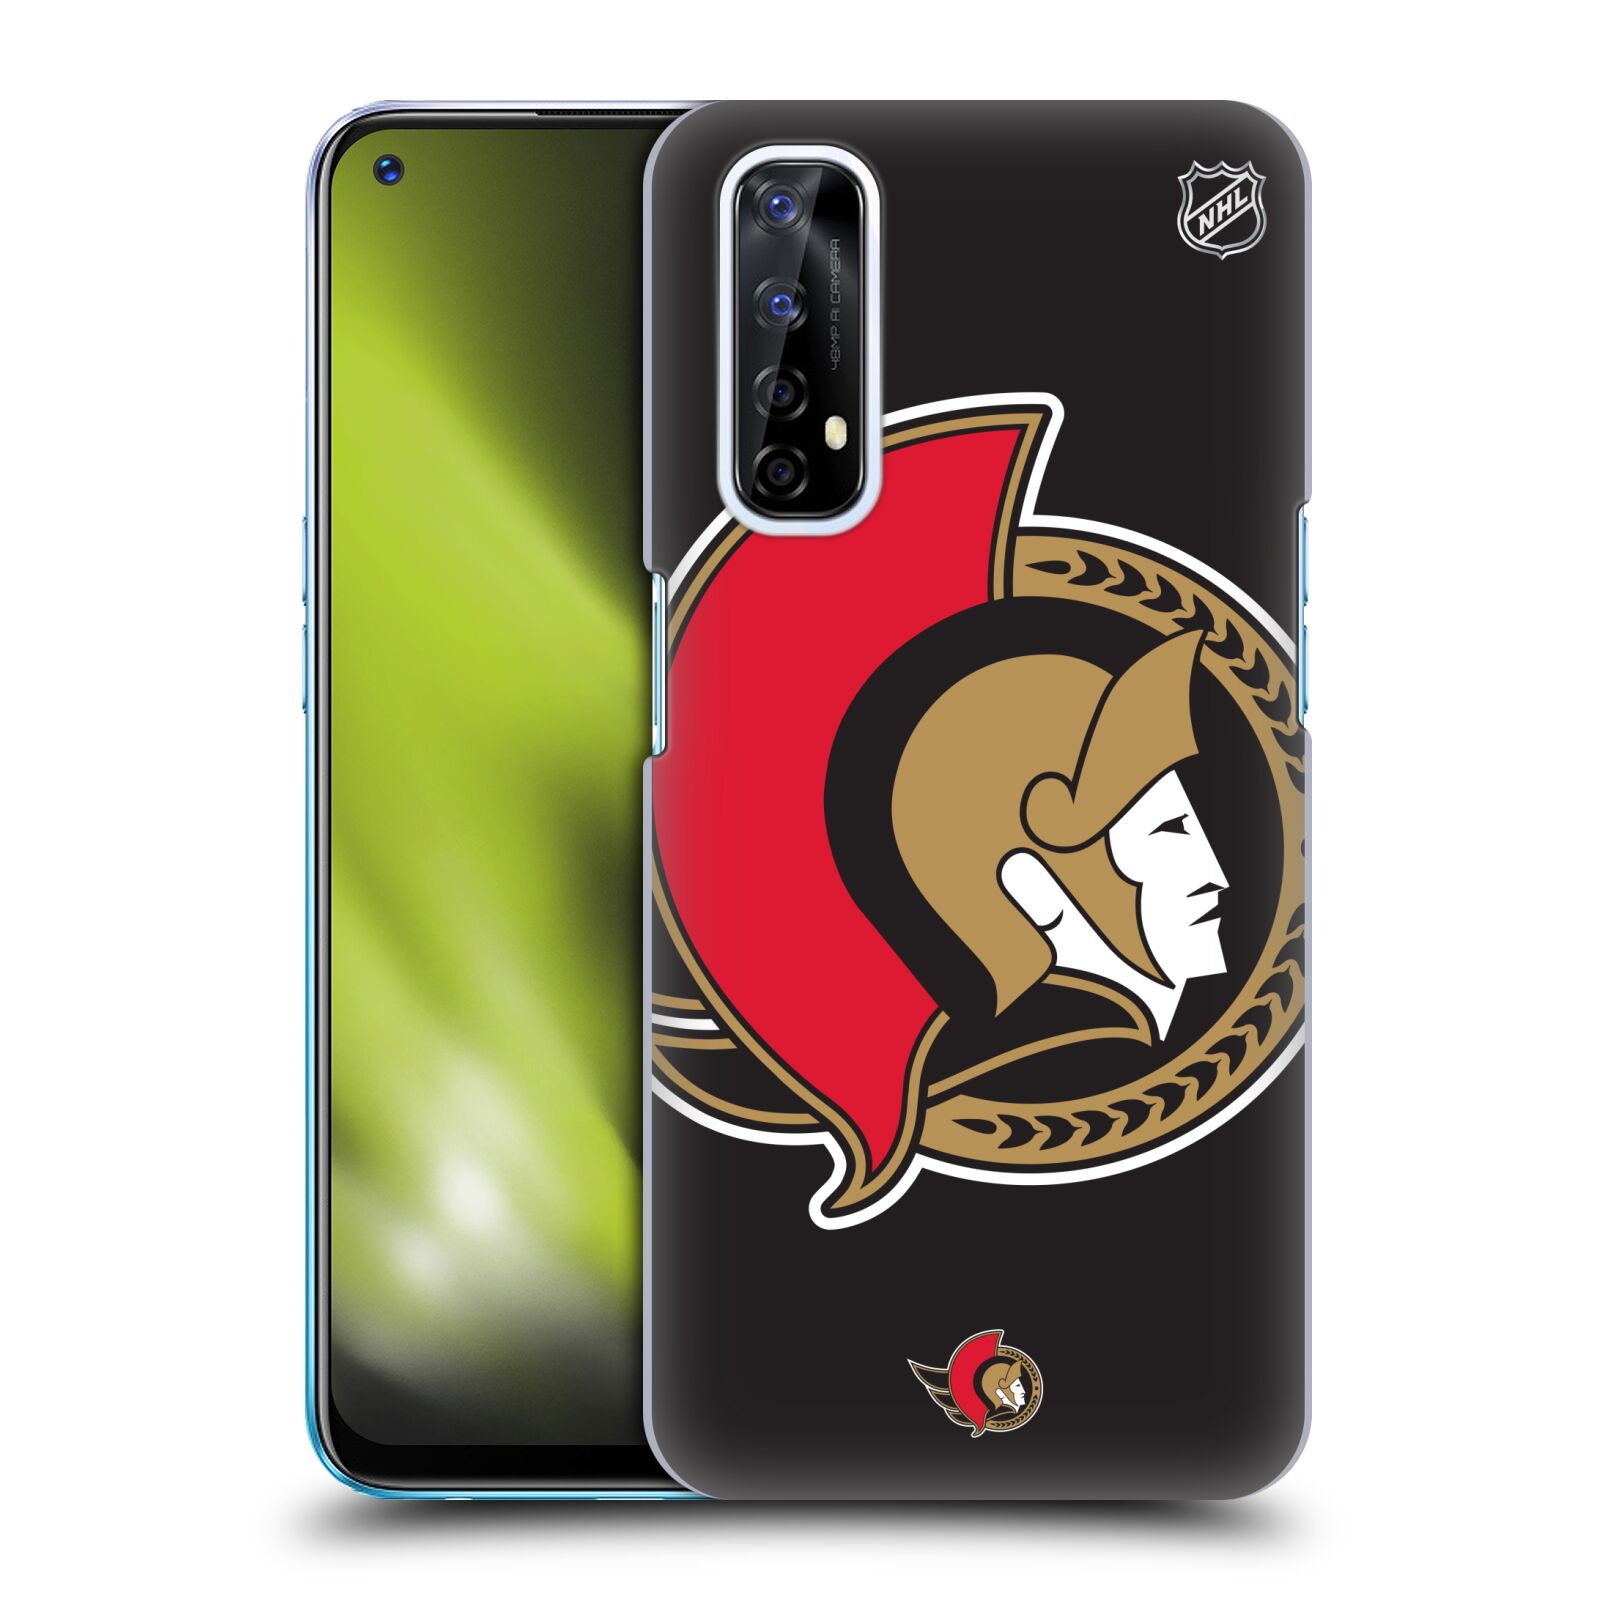 Pouzdro na mobil Realme 7 - HEAD CASE - Hokej NHL - Ottawa Senators - Velký znak